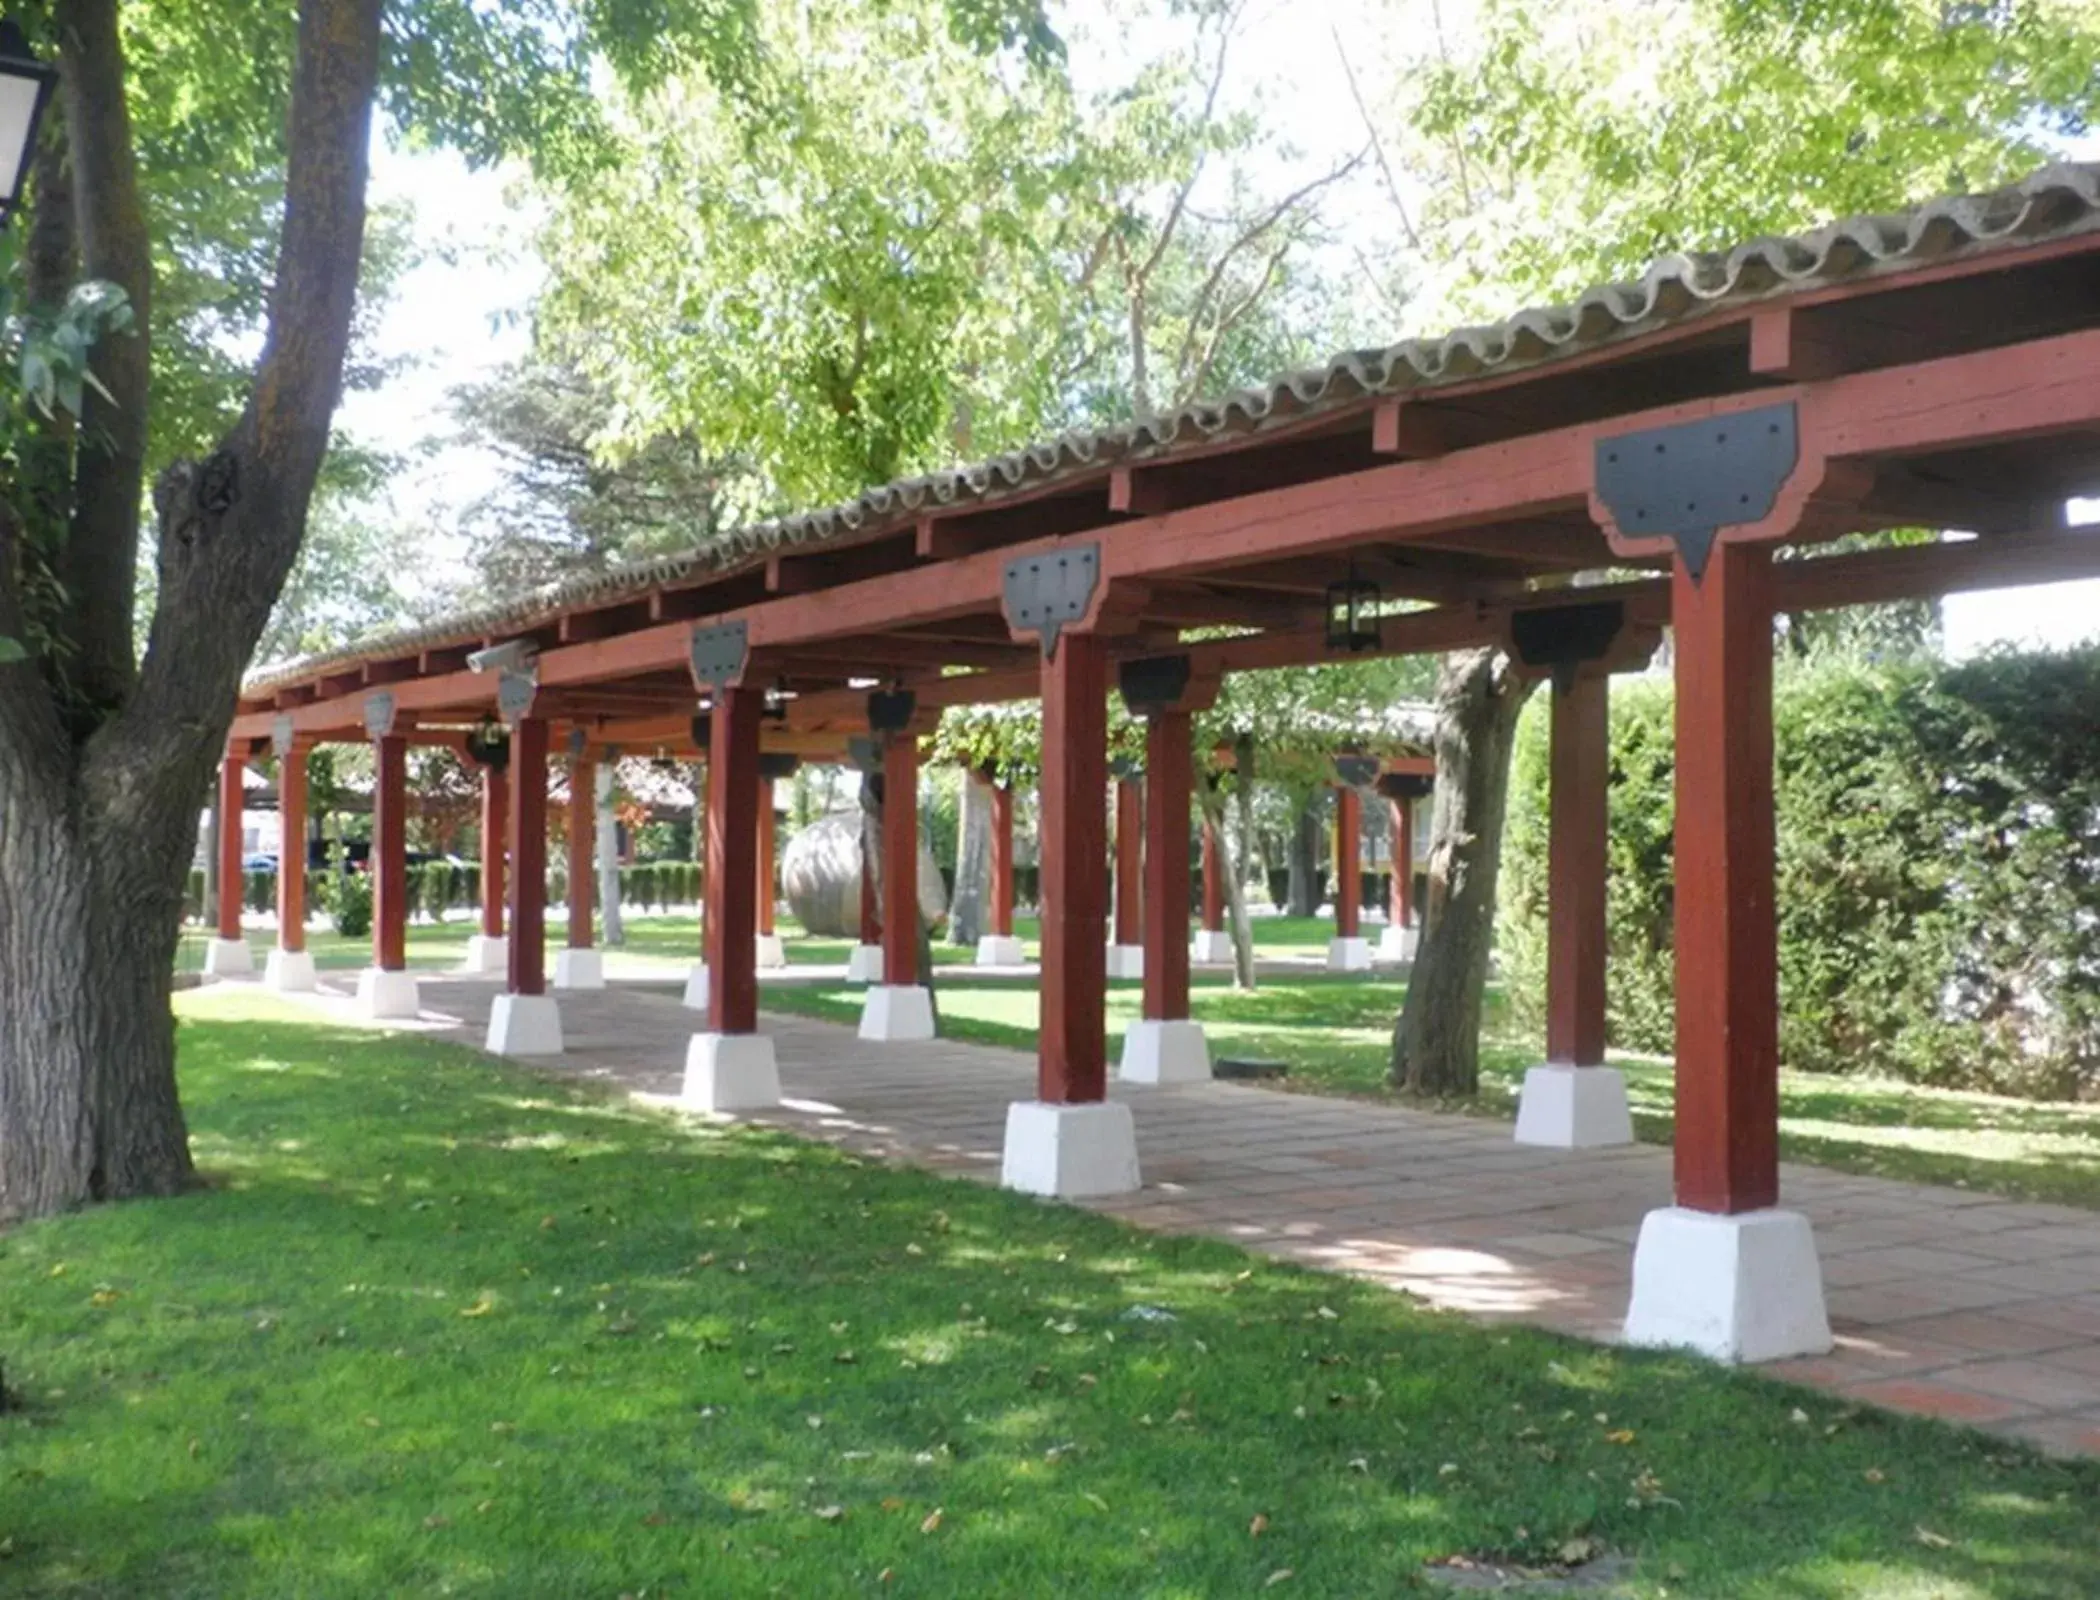 Area and facilities, Property Building in Parador de Manzanares